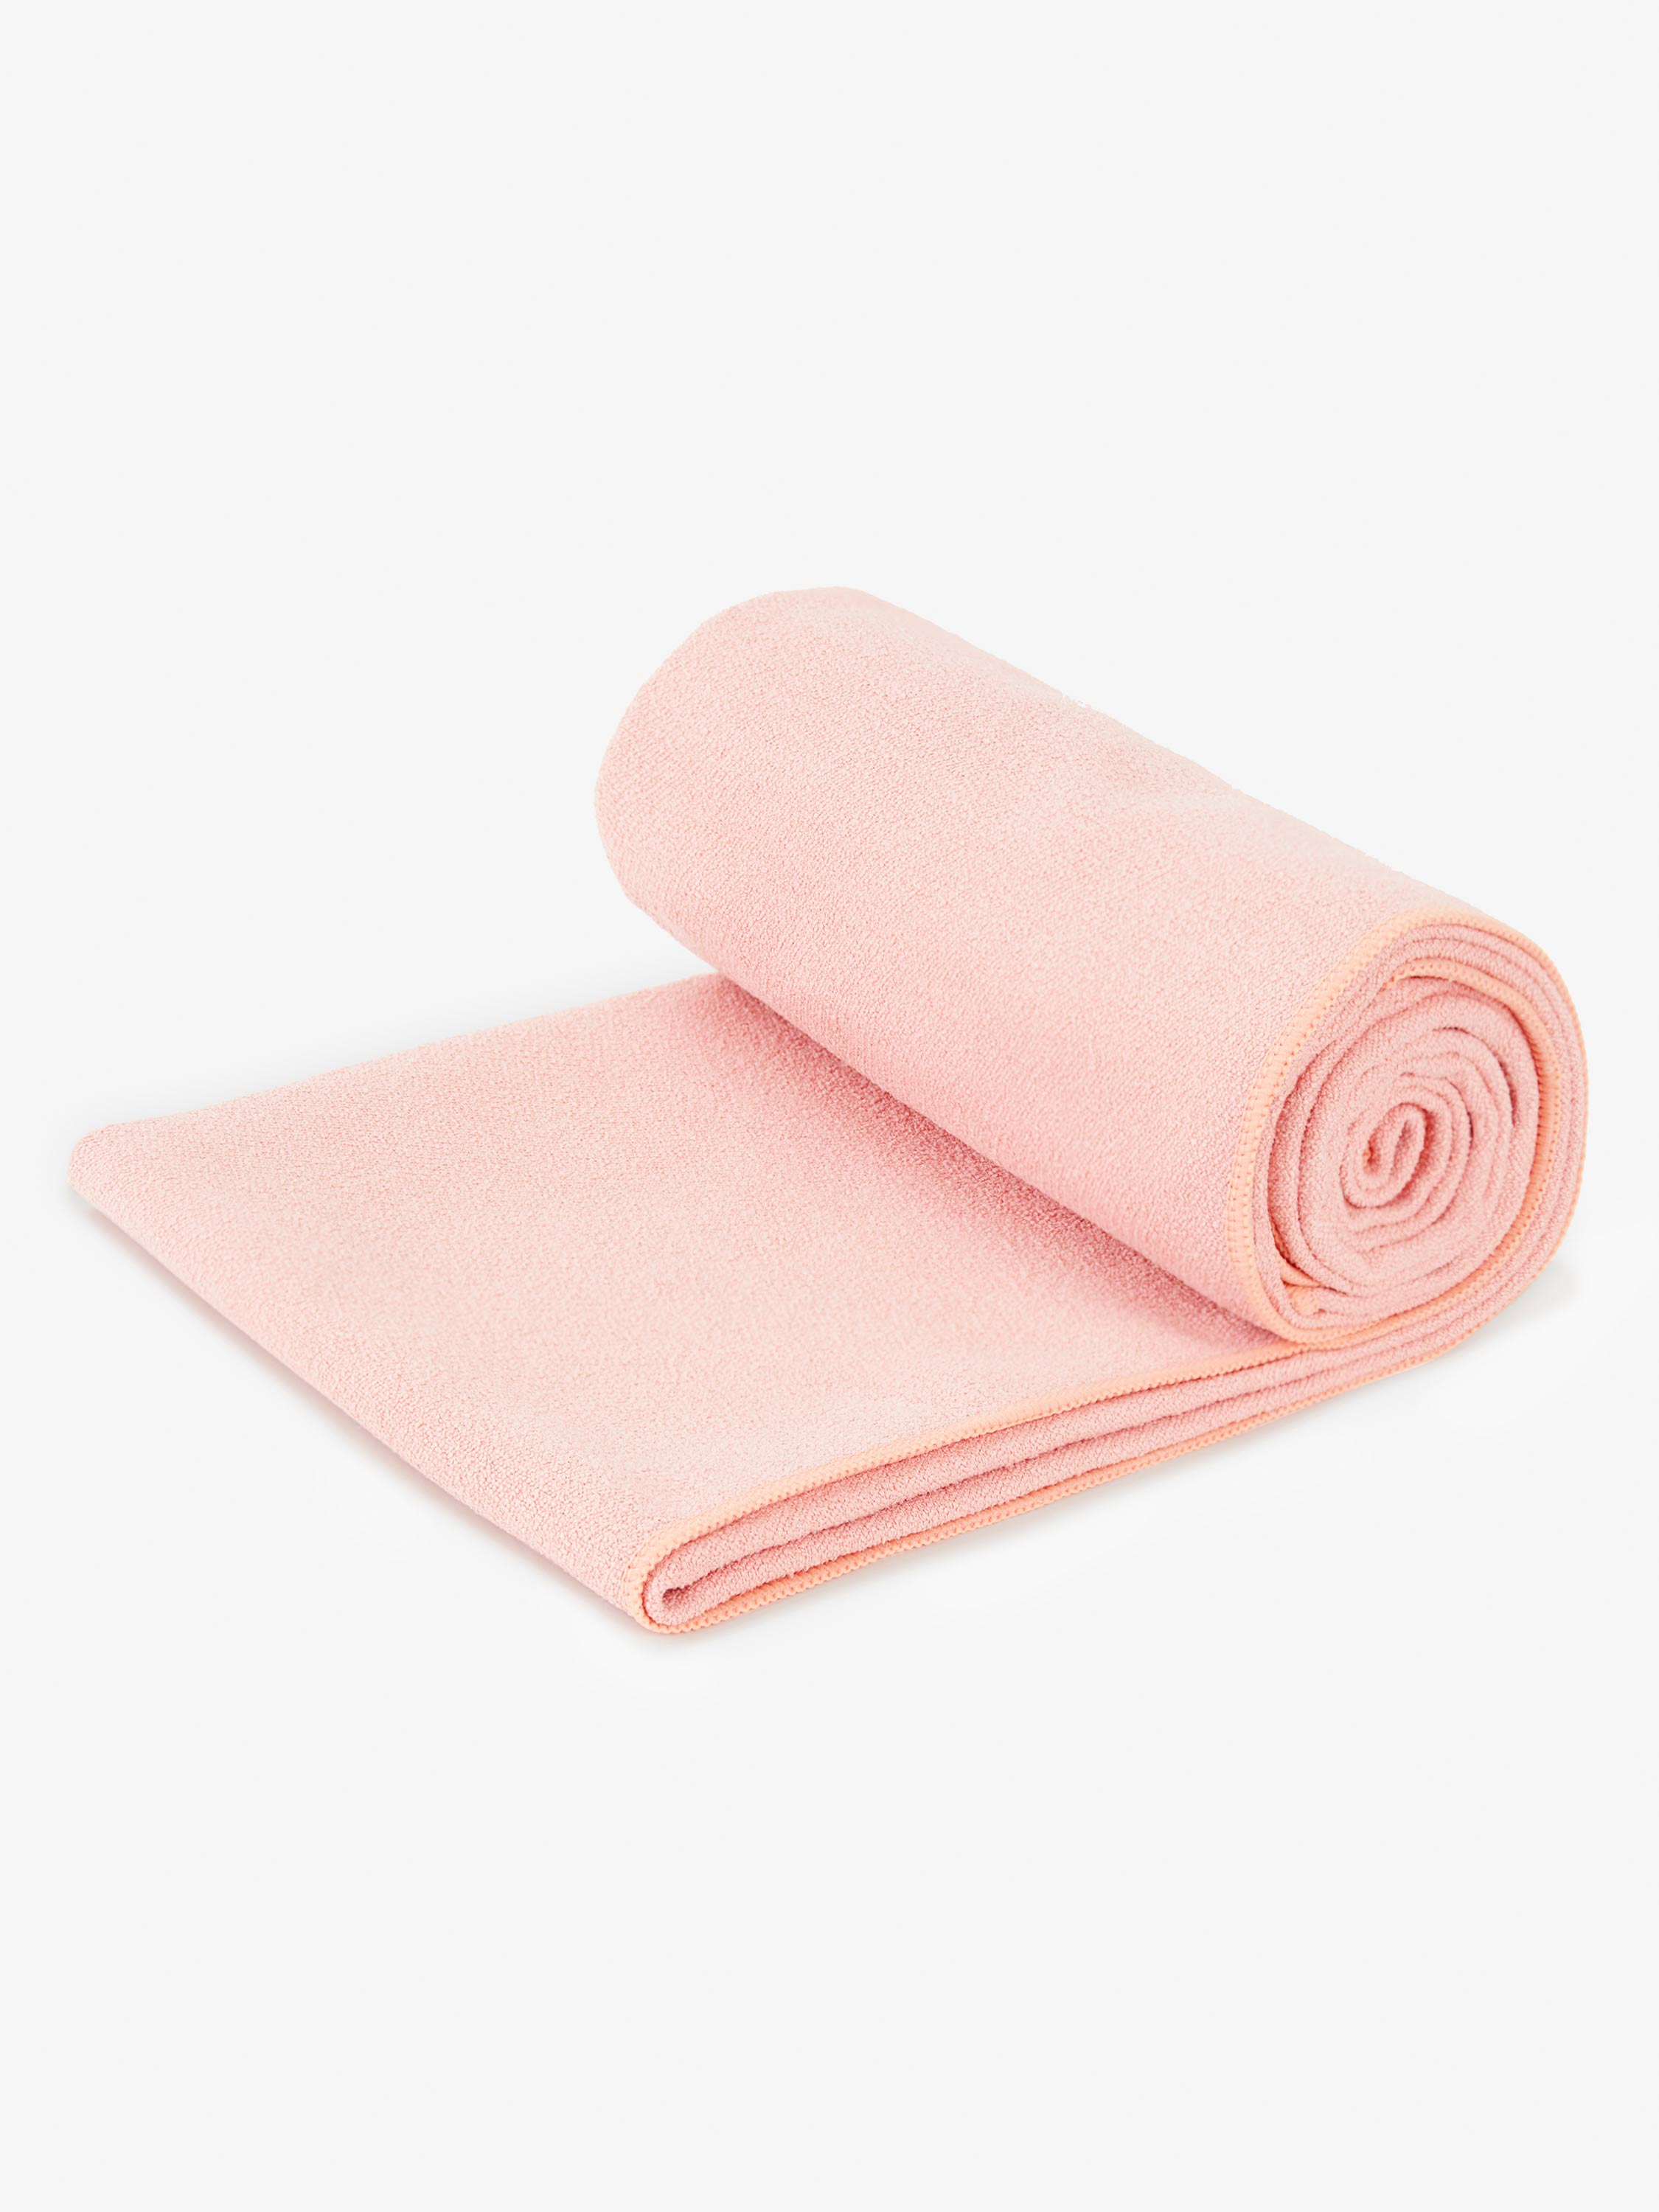 Turtle Printed Yoga Mat / Towel Tote Bag - olive – Pink Vanilla